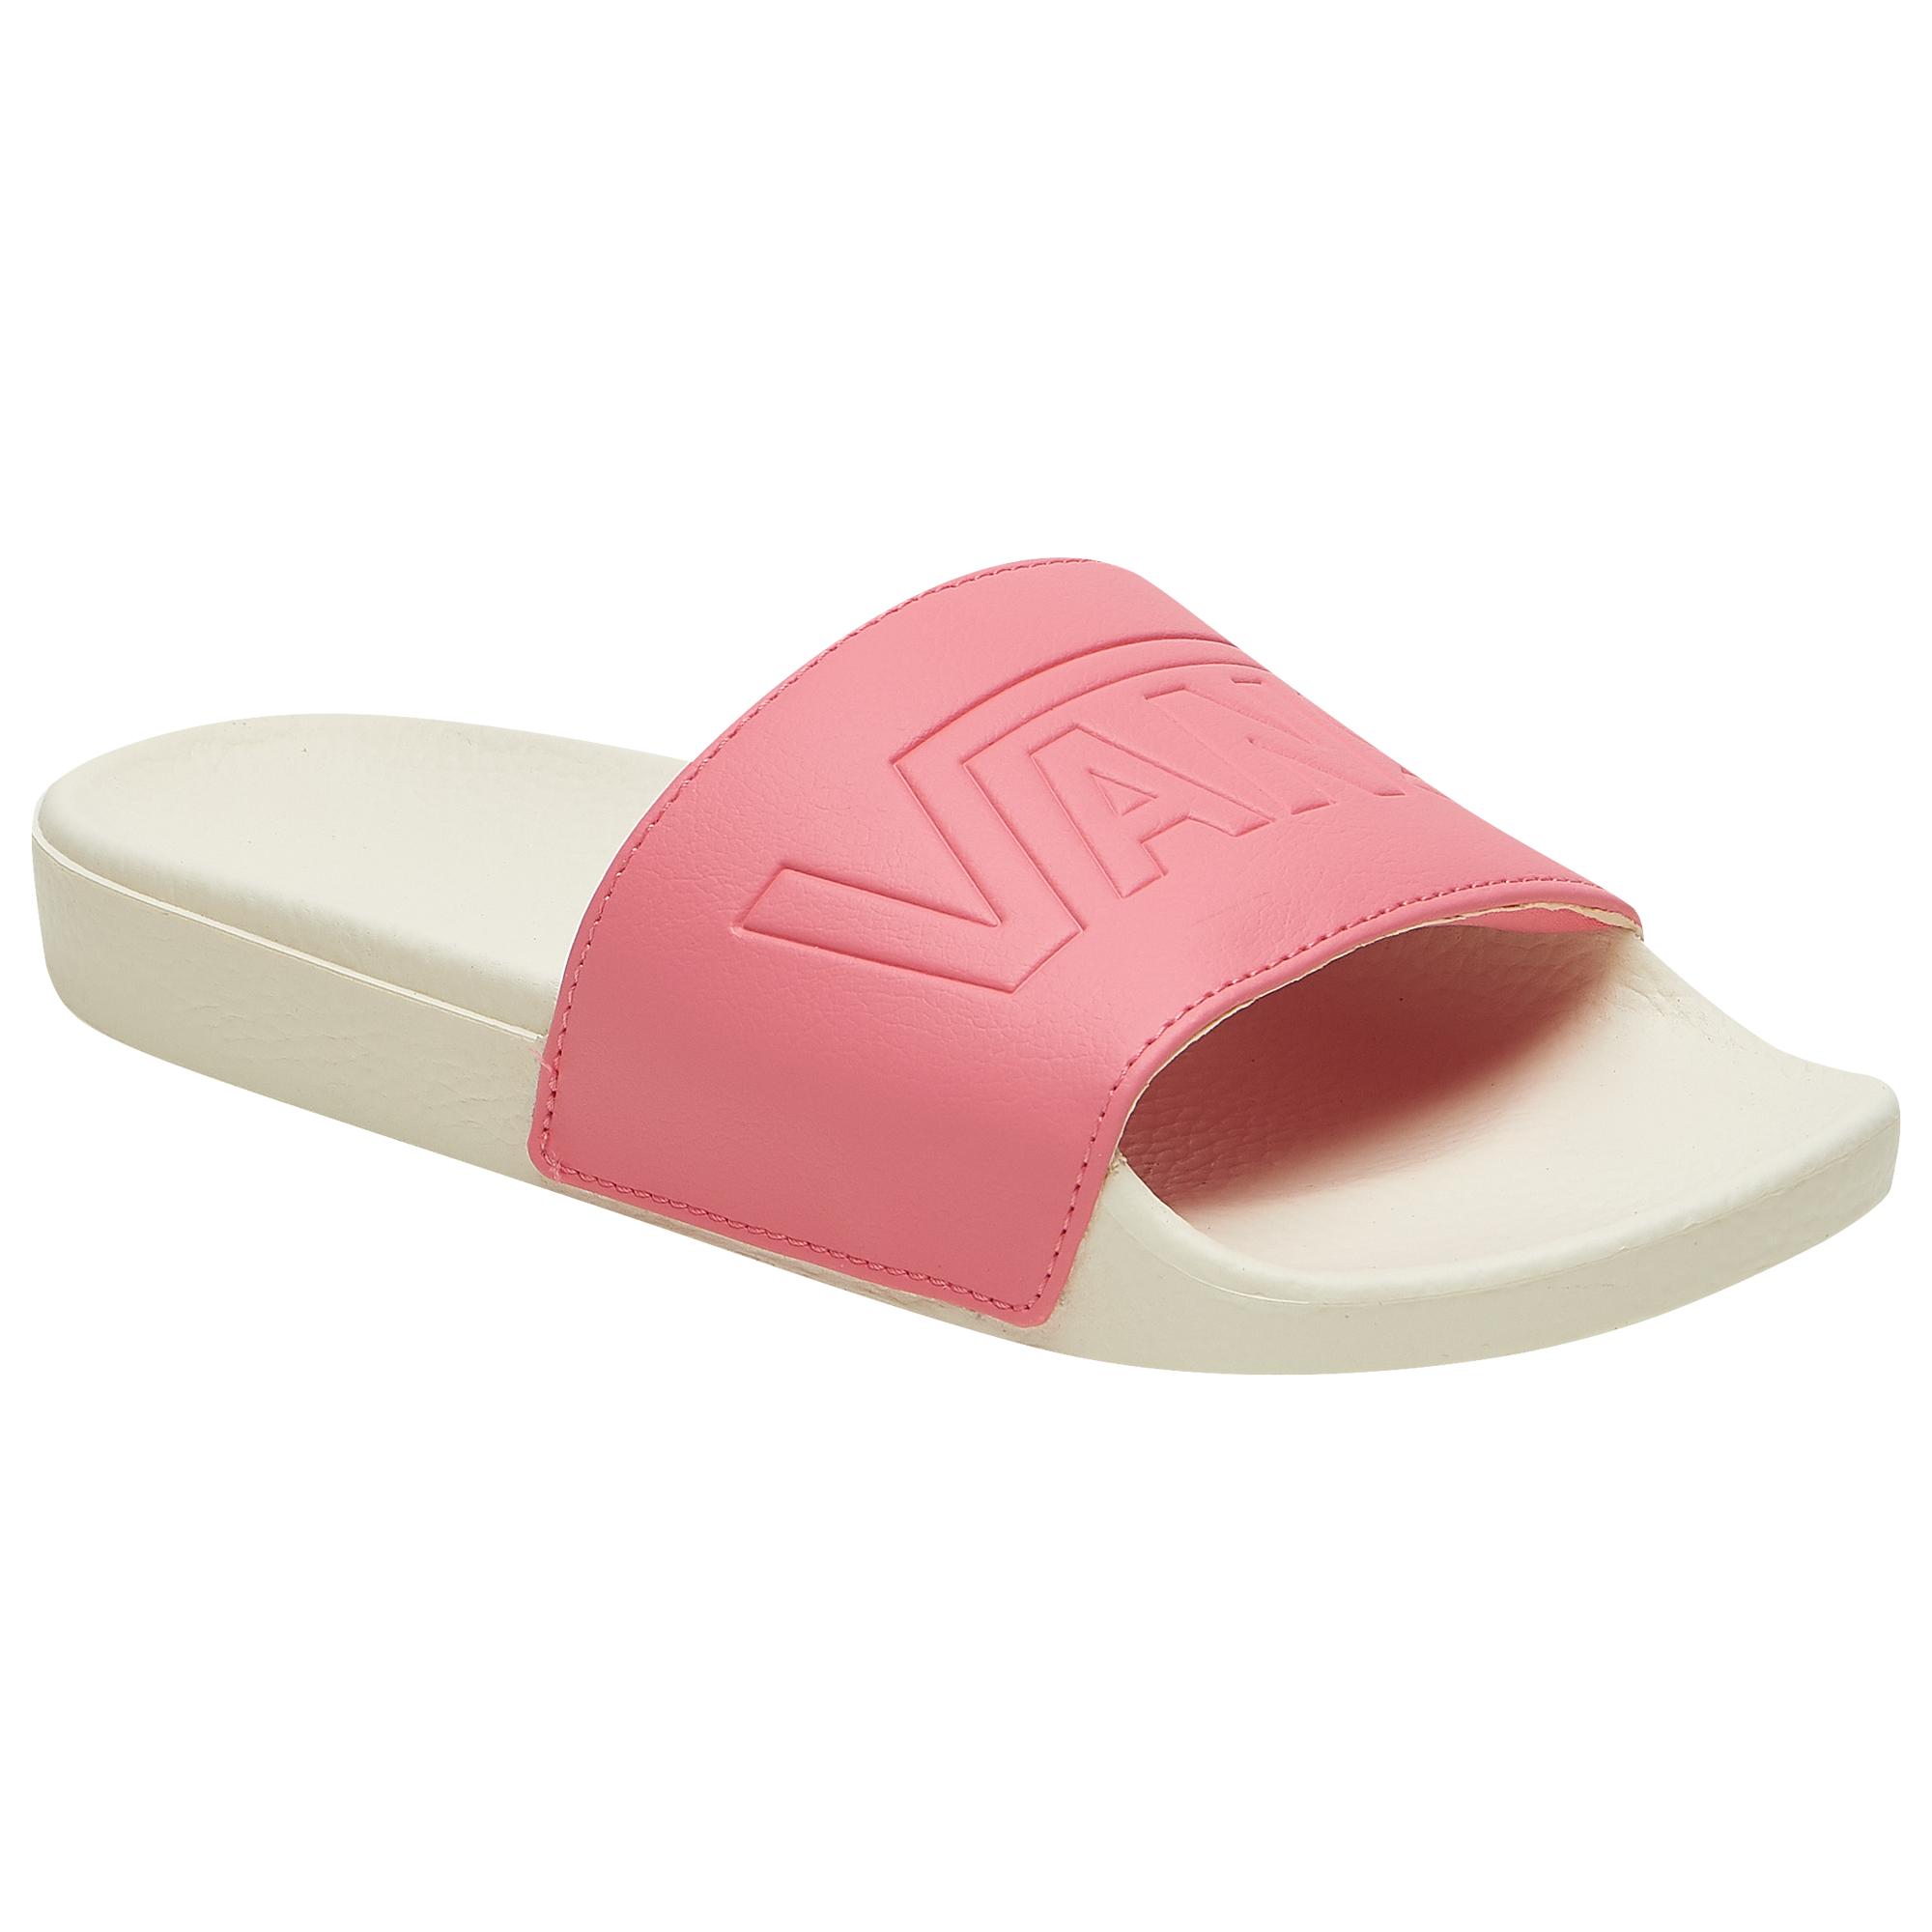 pink vans sandals